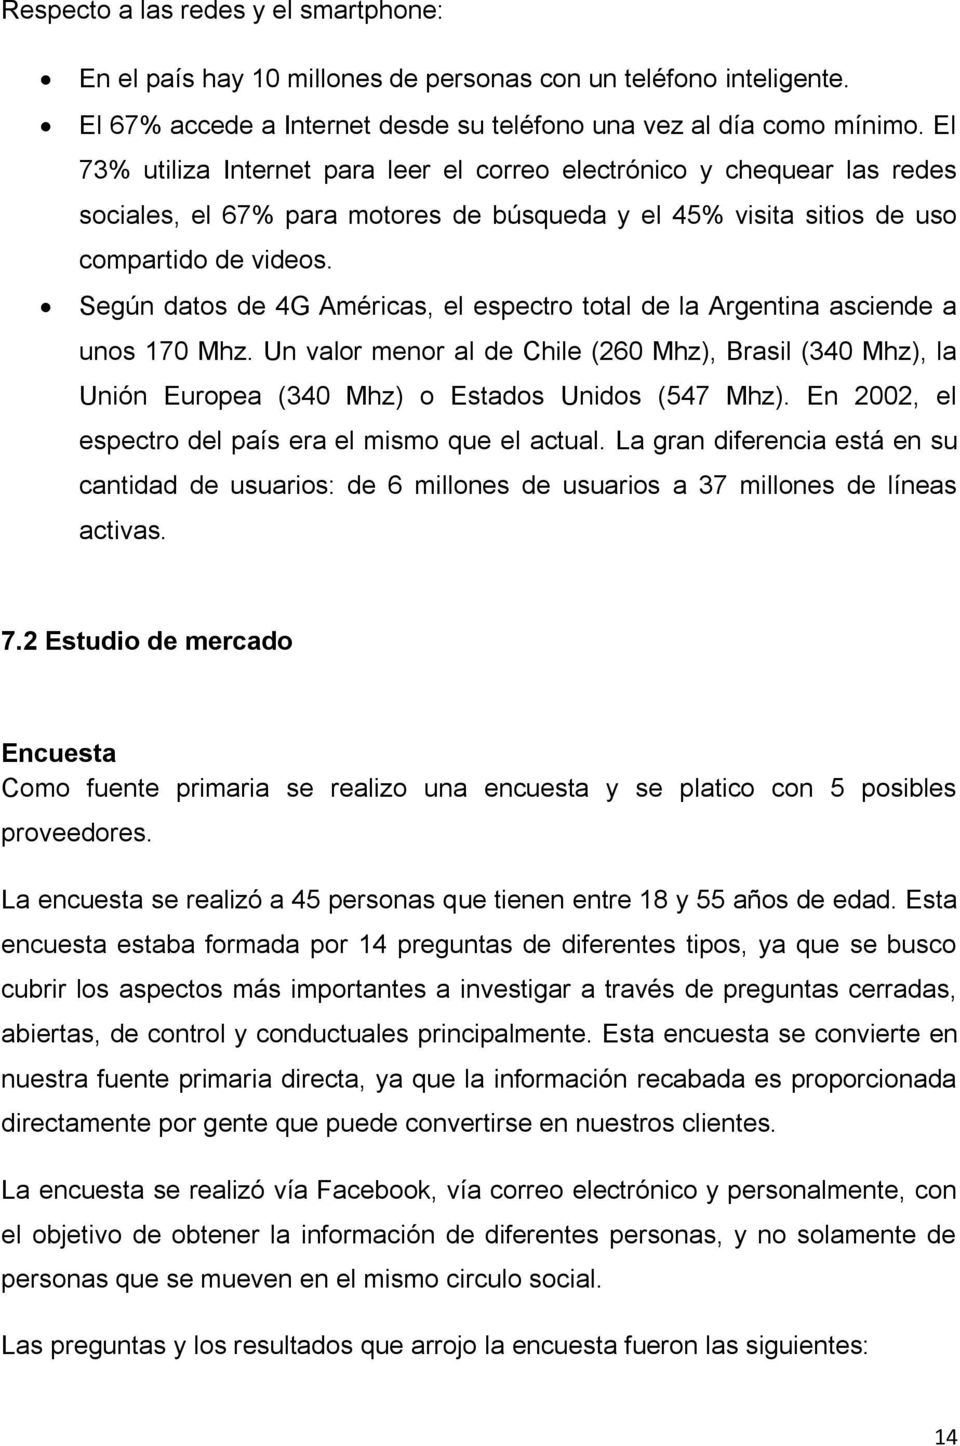 Según datos de 4G Américas, el espectro total de la Argentina asciende a unos 170 Mhz. Un valor menor al de Chile (260 Mhz), Brasil (340 Mhz), la Unión Europea (340 Mhz) o Estados Unidos (547 Mhz).